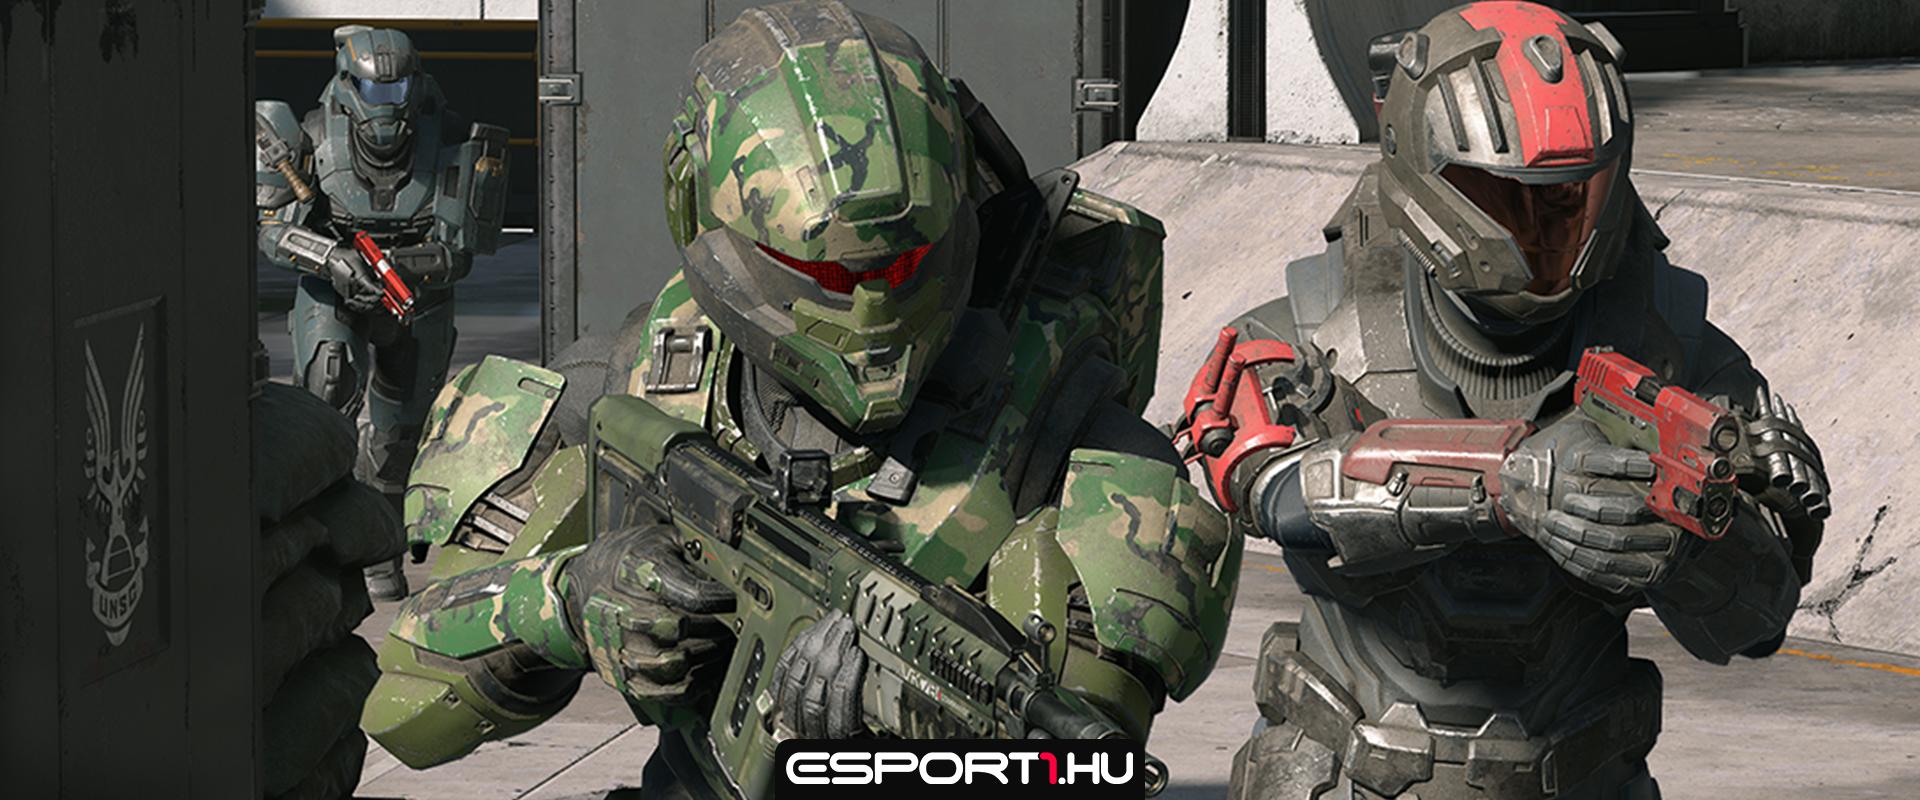 Megbüntették az eUnited Halo-játékosát – mert káromkodott